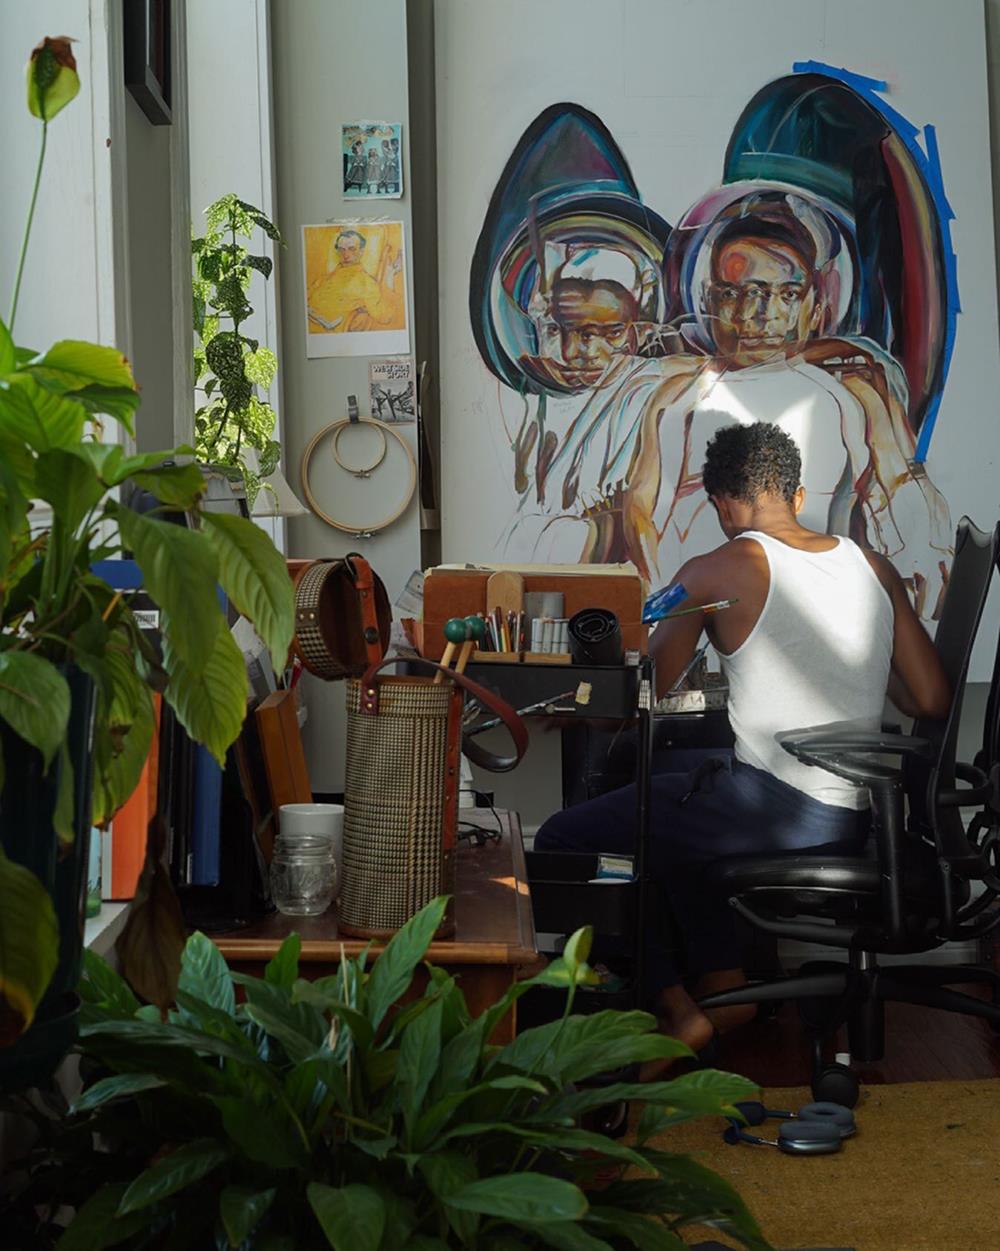 O artista plástico Chris Pleasant, um homem negro e jovem, de cabelo curto, em seu estúdio de pintura. Usa uma camiseta regata branca e calças pretas e está sentado em uma cadeira enquanto desenha. - Metrópoles